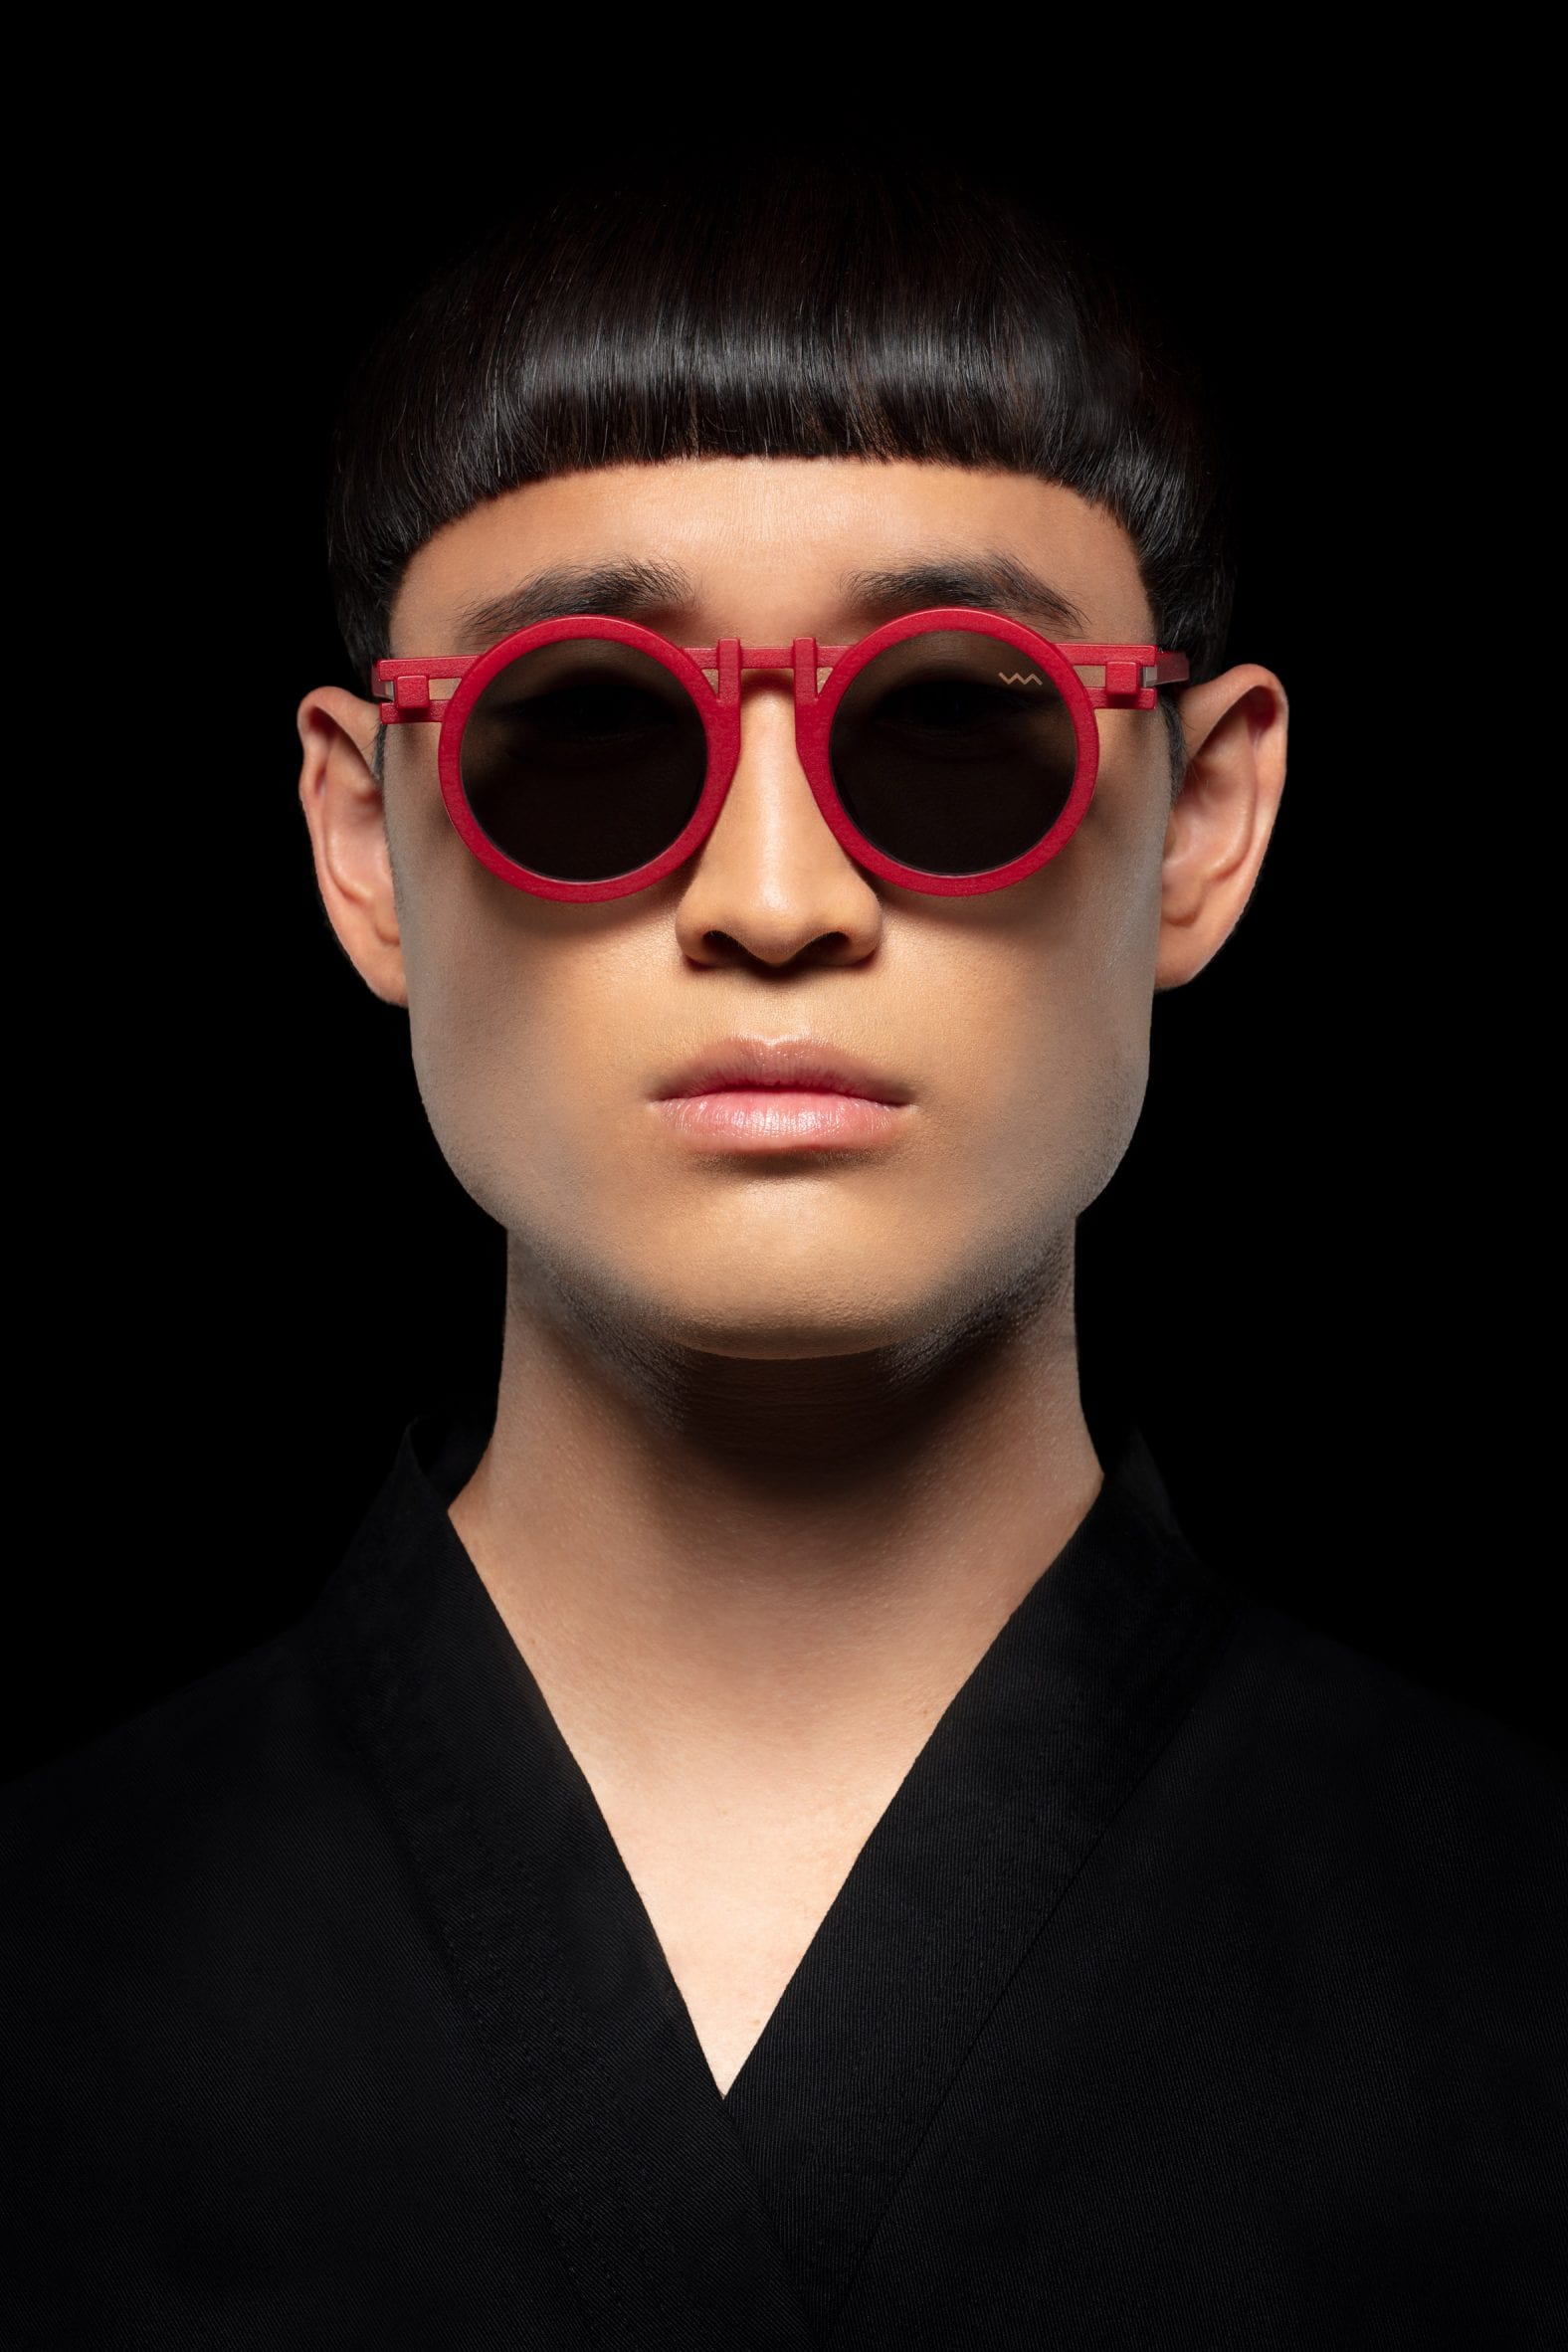 CL0013 sunglasses by Kengo Kuma